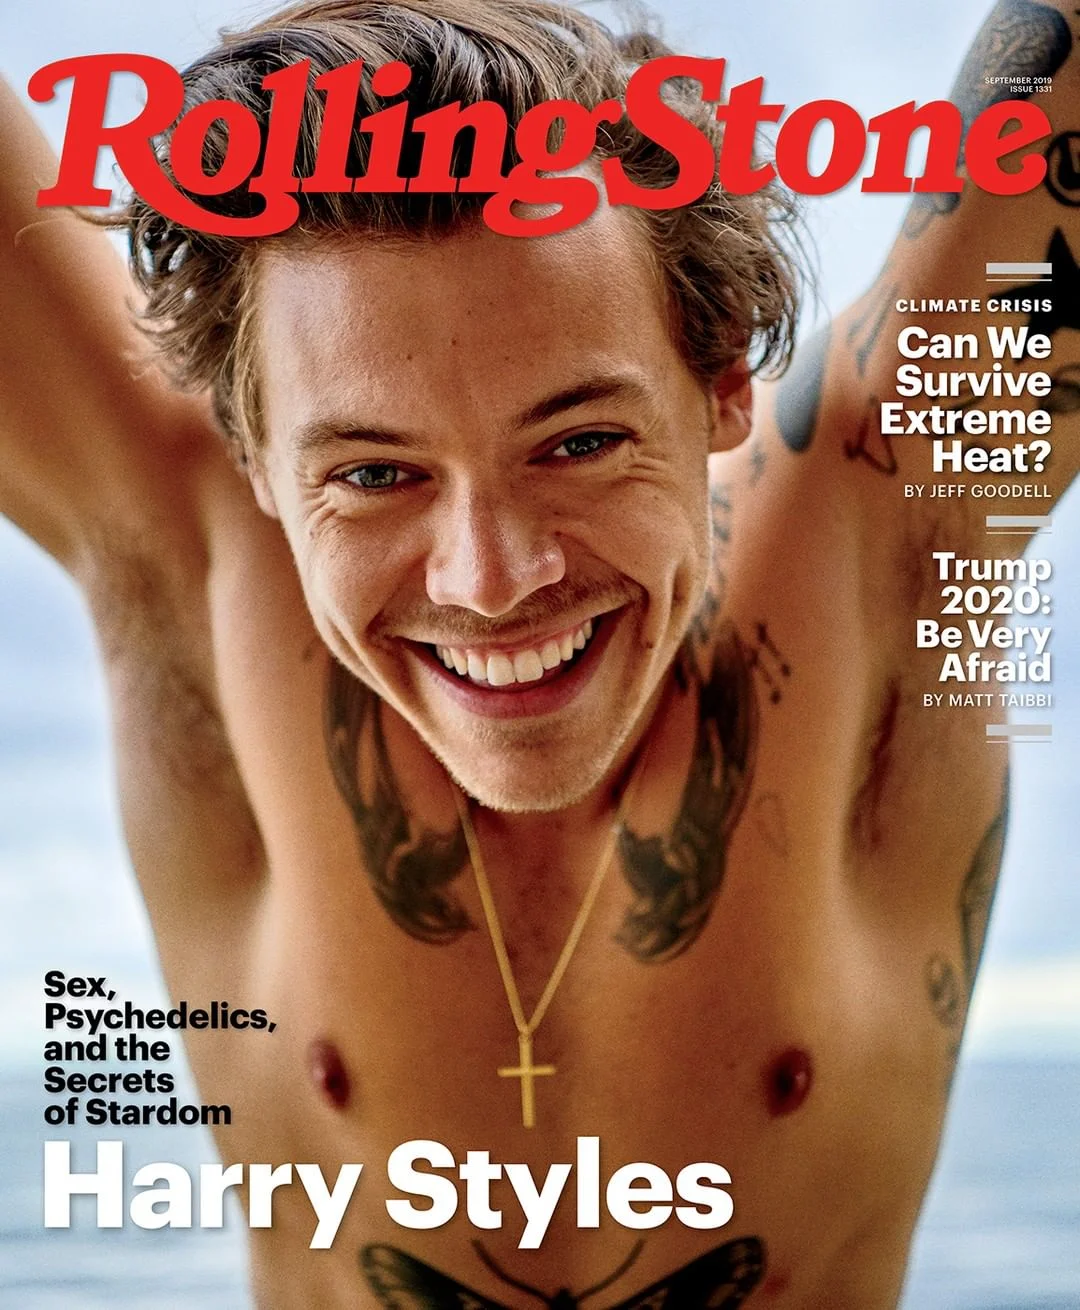 Гаррі Стайлс похизувався волохатими пахвами на обкладинці журналу Rolling Stone - фото 446556